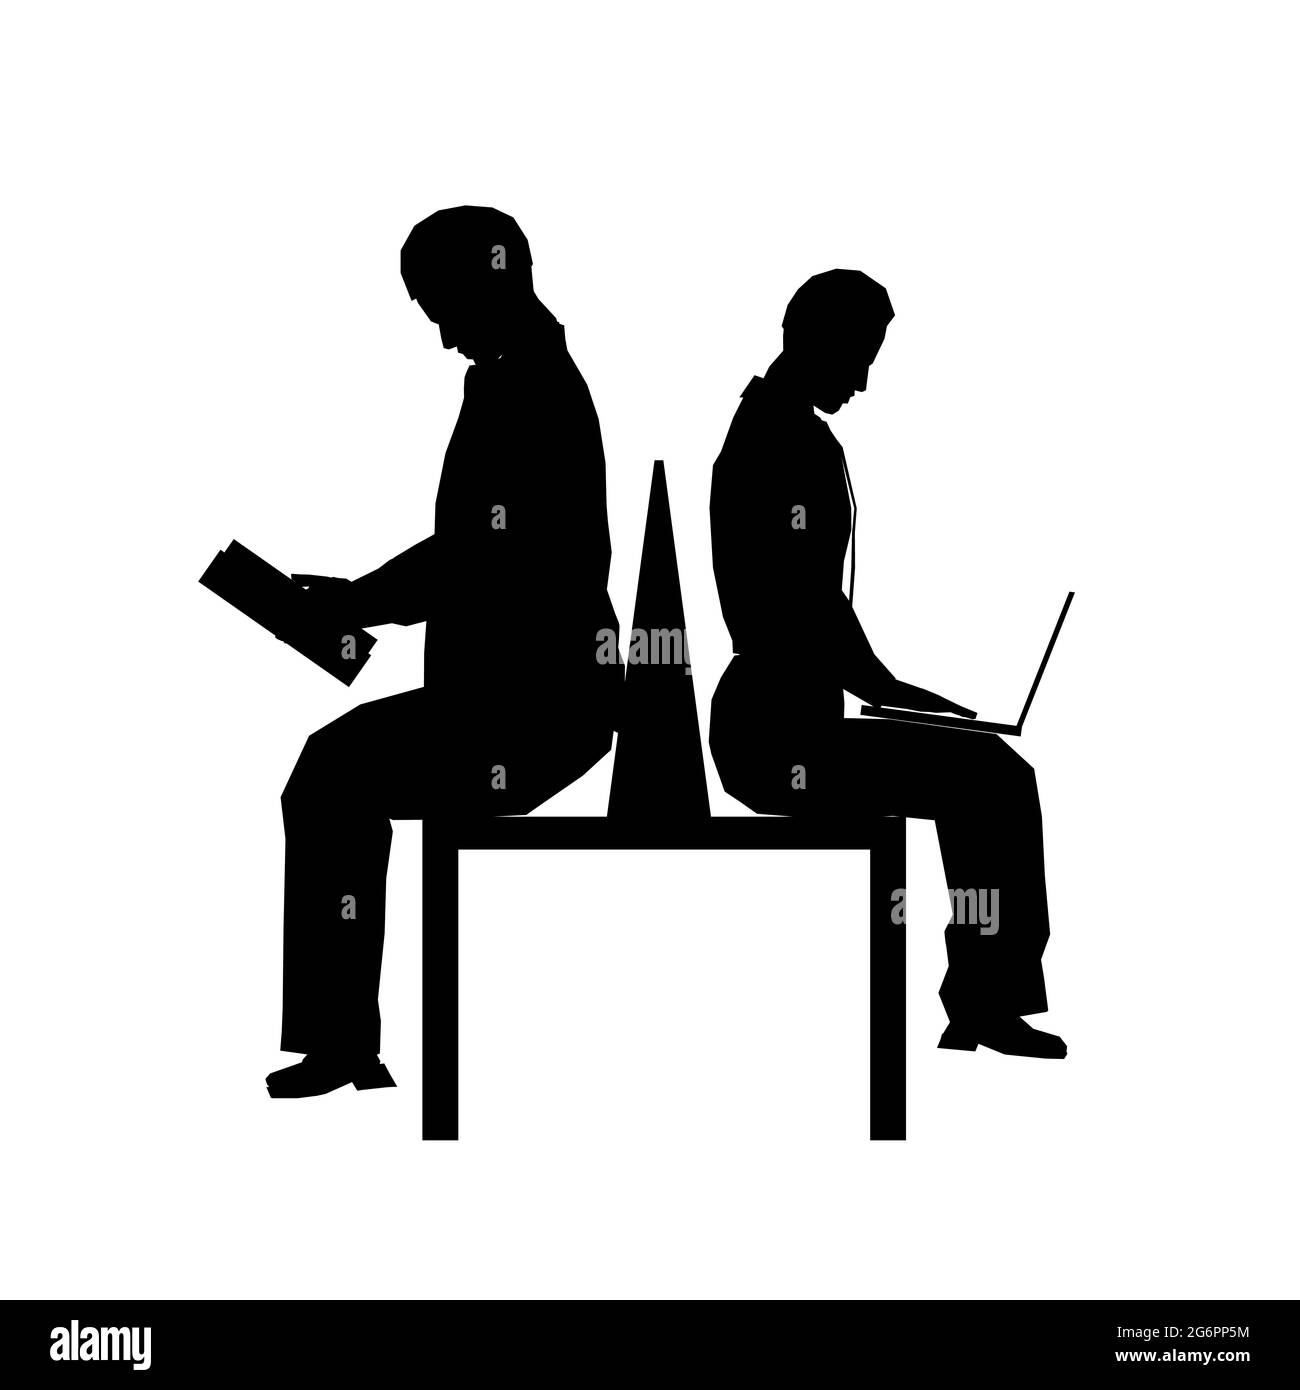 Silhouette de deux personnes assises sur un banc isolé sur un fond blanc. Une personne lit un livre, l'autre travaille dans un ordinateur portable. Vecteur Ill Illustration de Vecteur